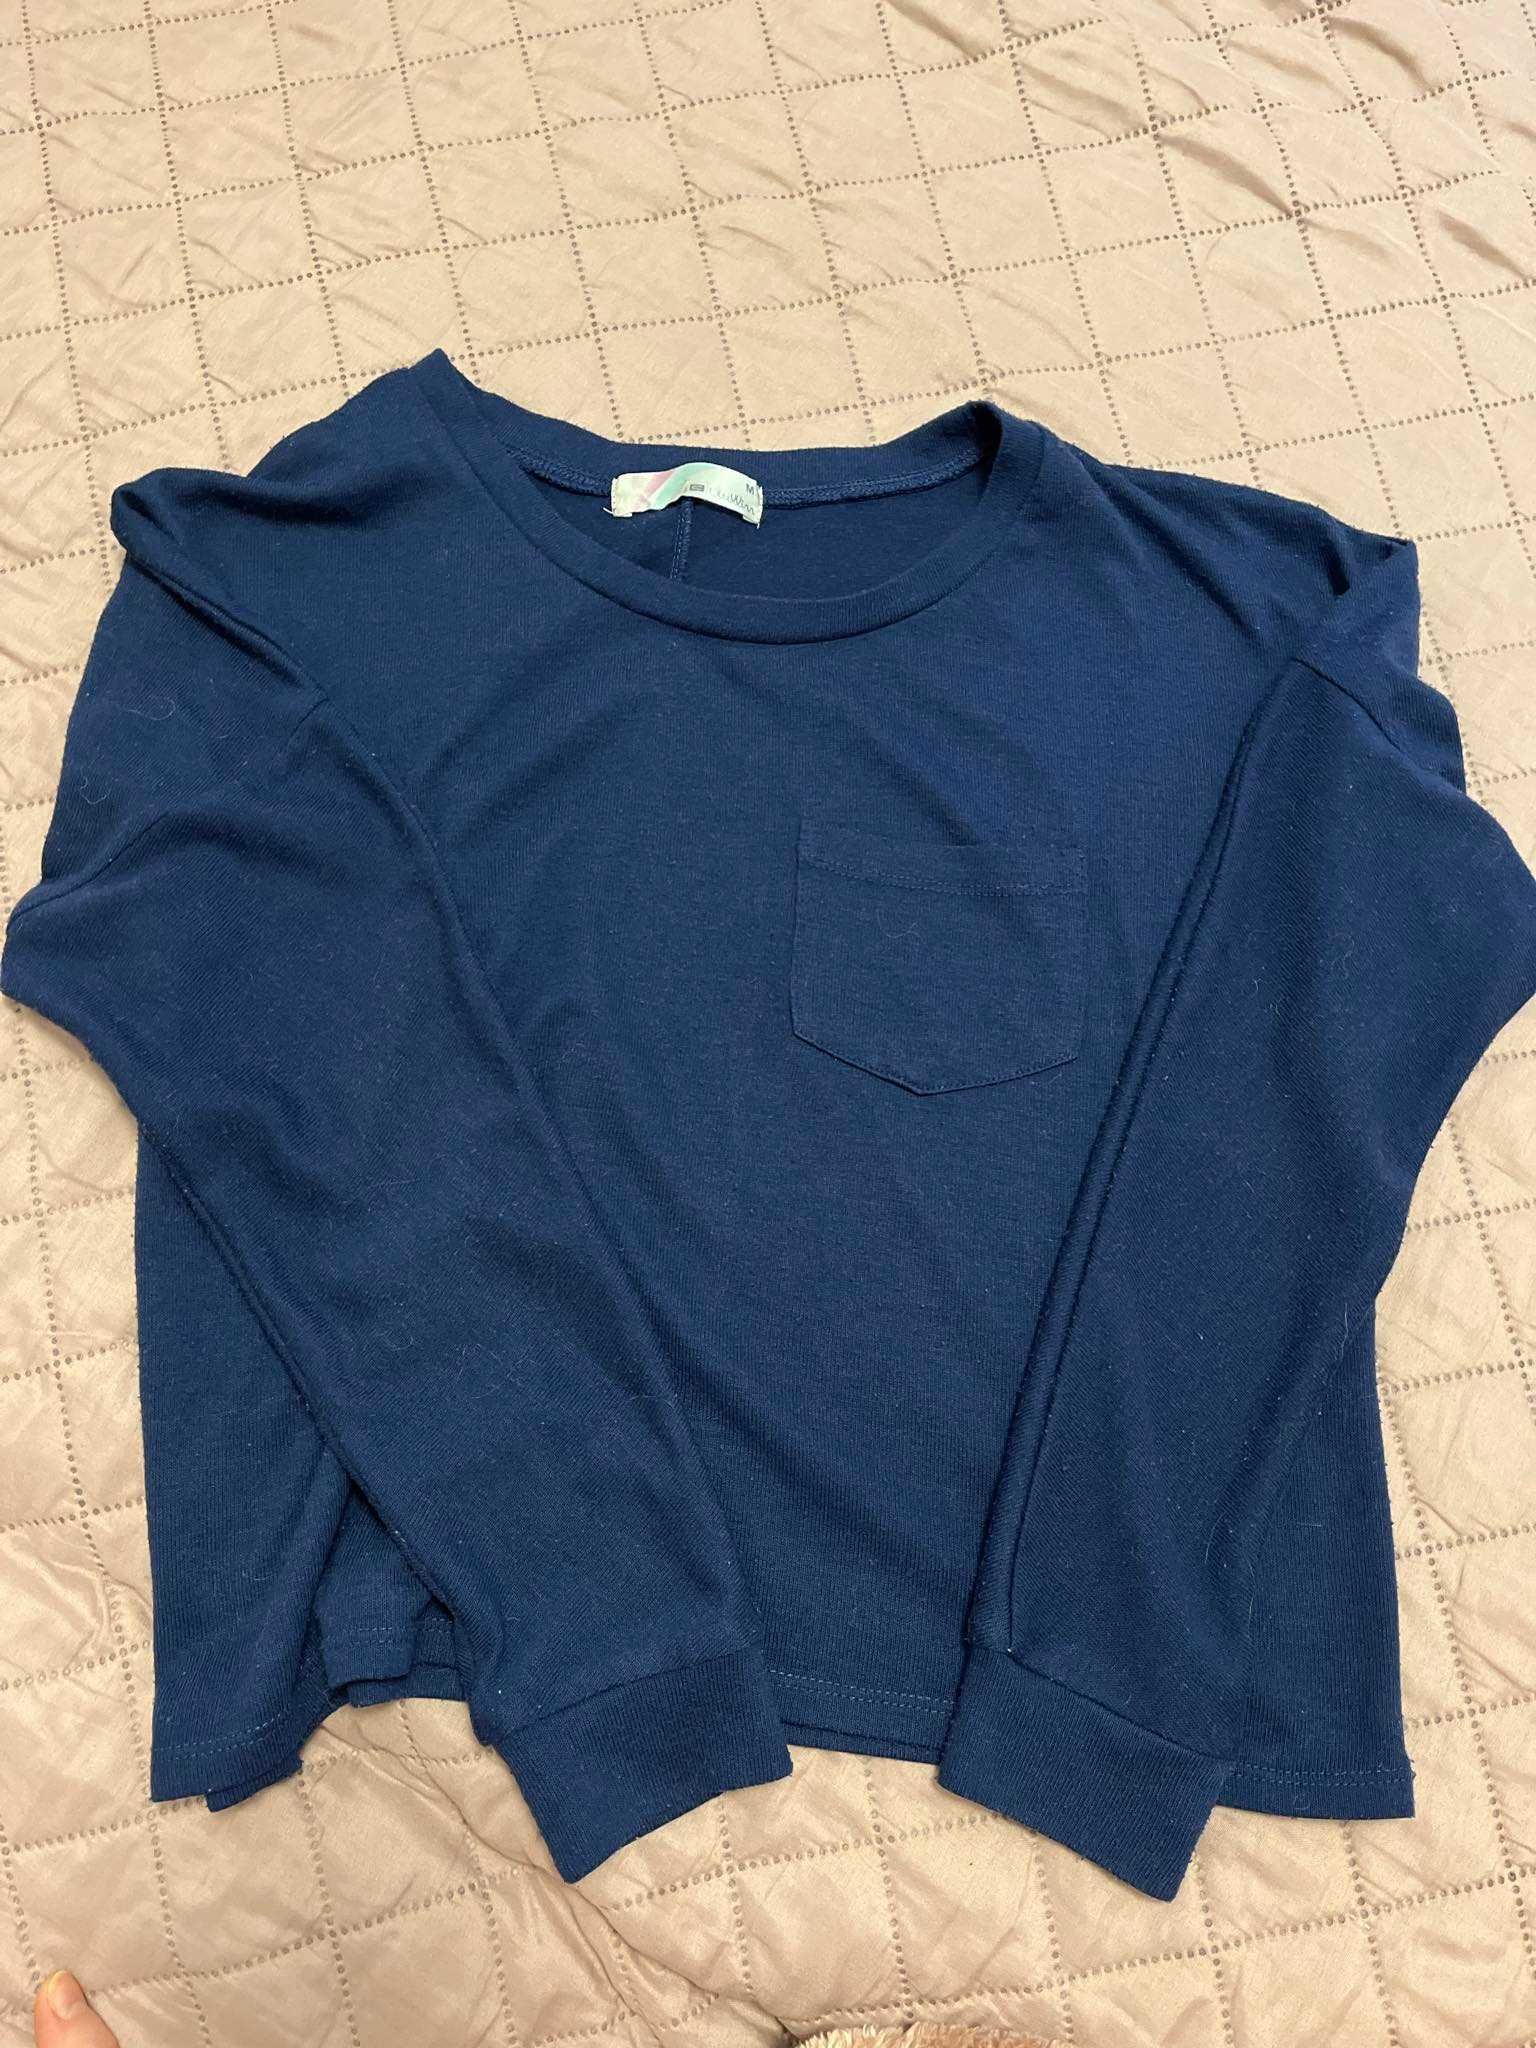 Zestaw 6szt. cienkie sweterki, bluzy XS-M